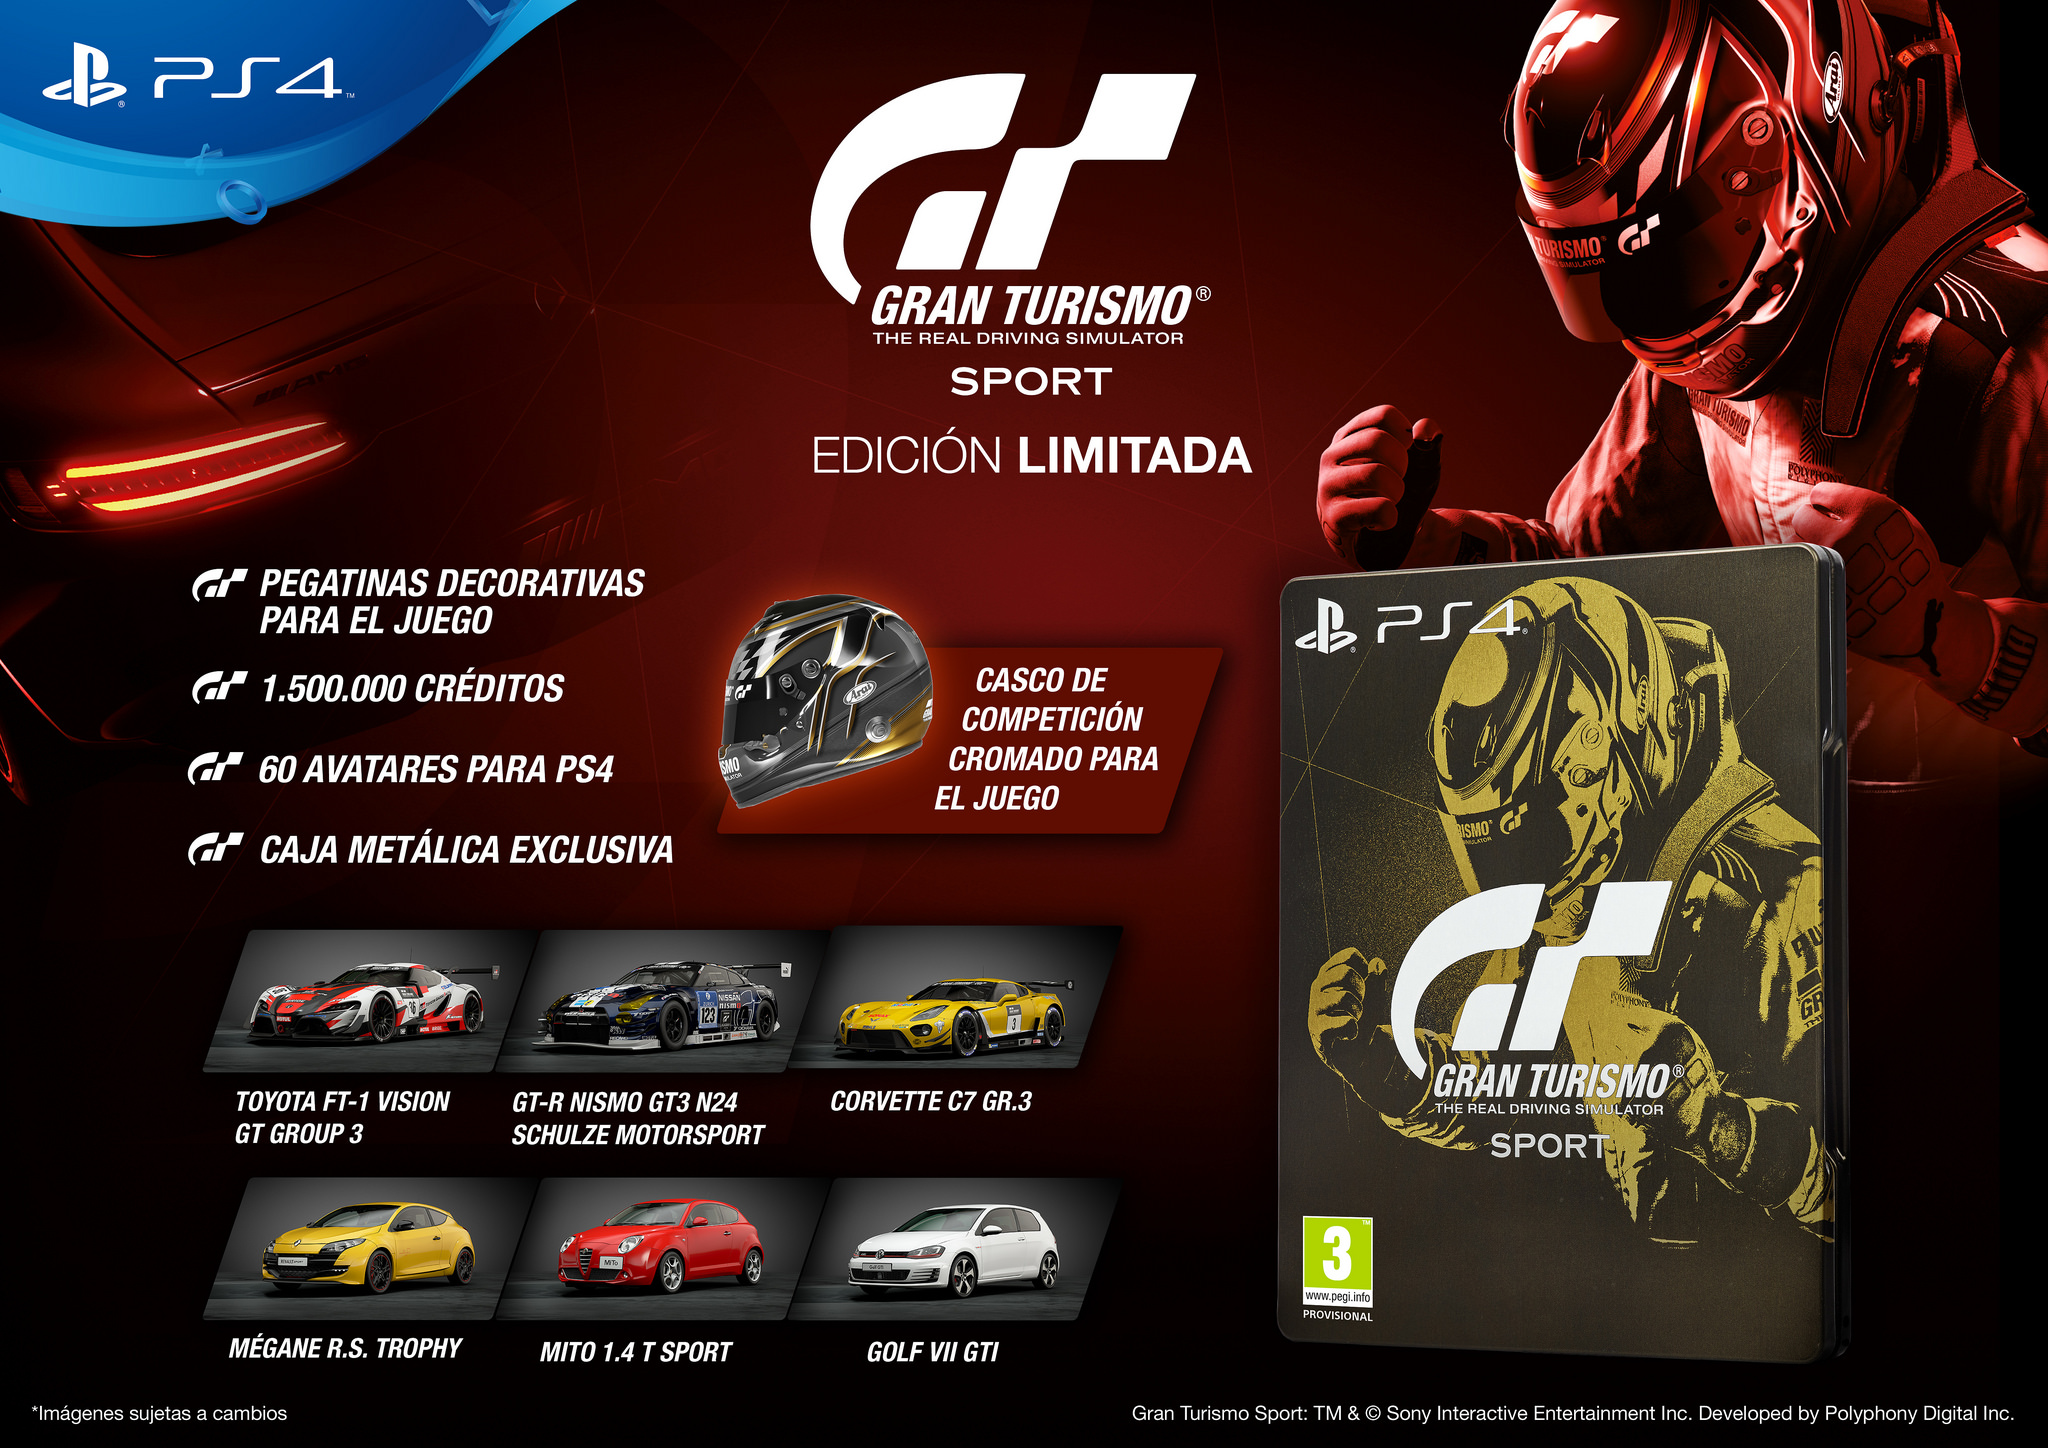 Revelada la portada y contenido de todas las ediciones de Gran Turismo Sport